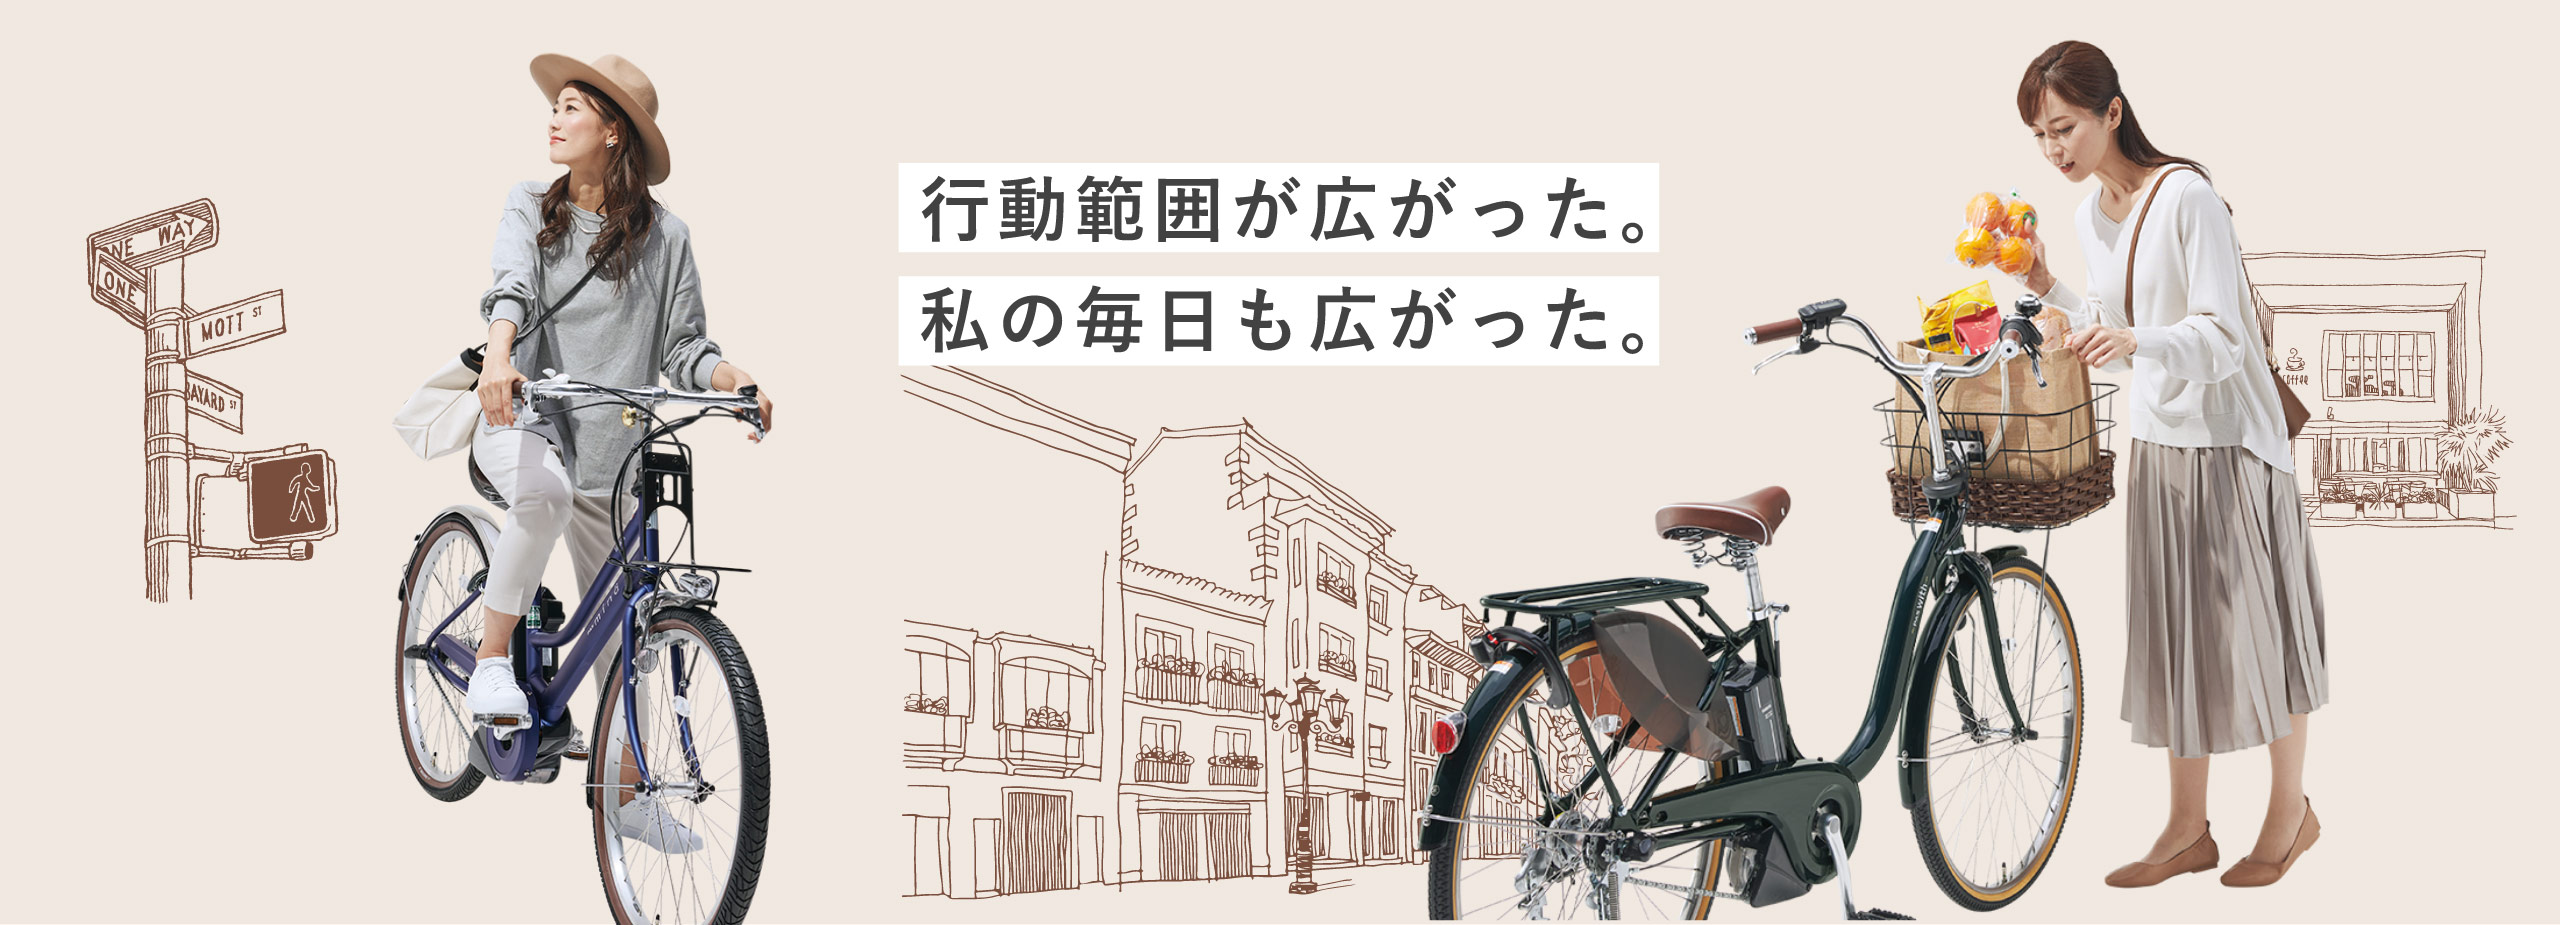 ショッピング×電動アシスト自転車ヤマハPAS - 電動自転車 | ヤマハ発動機